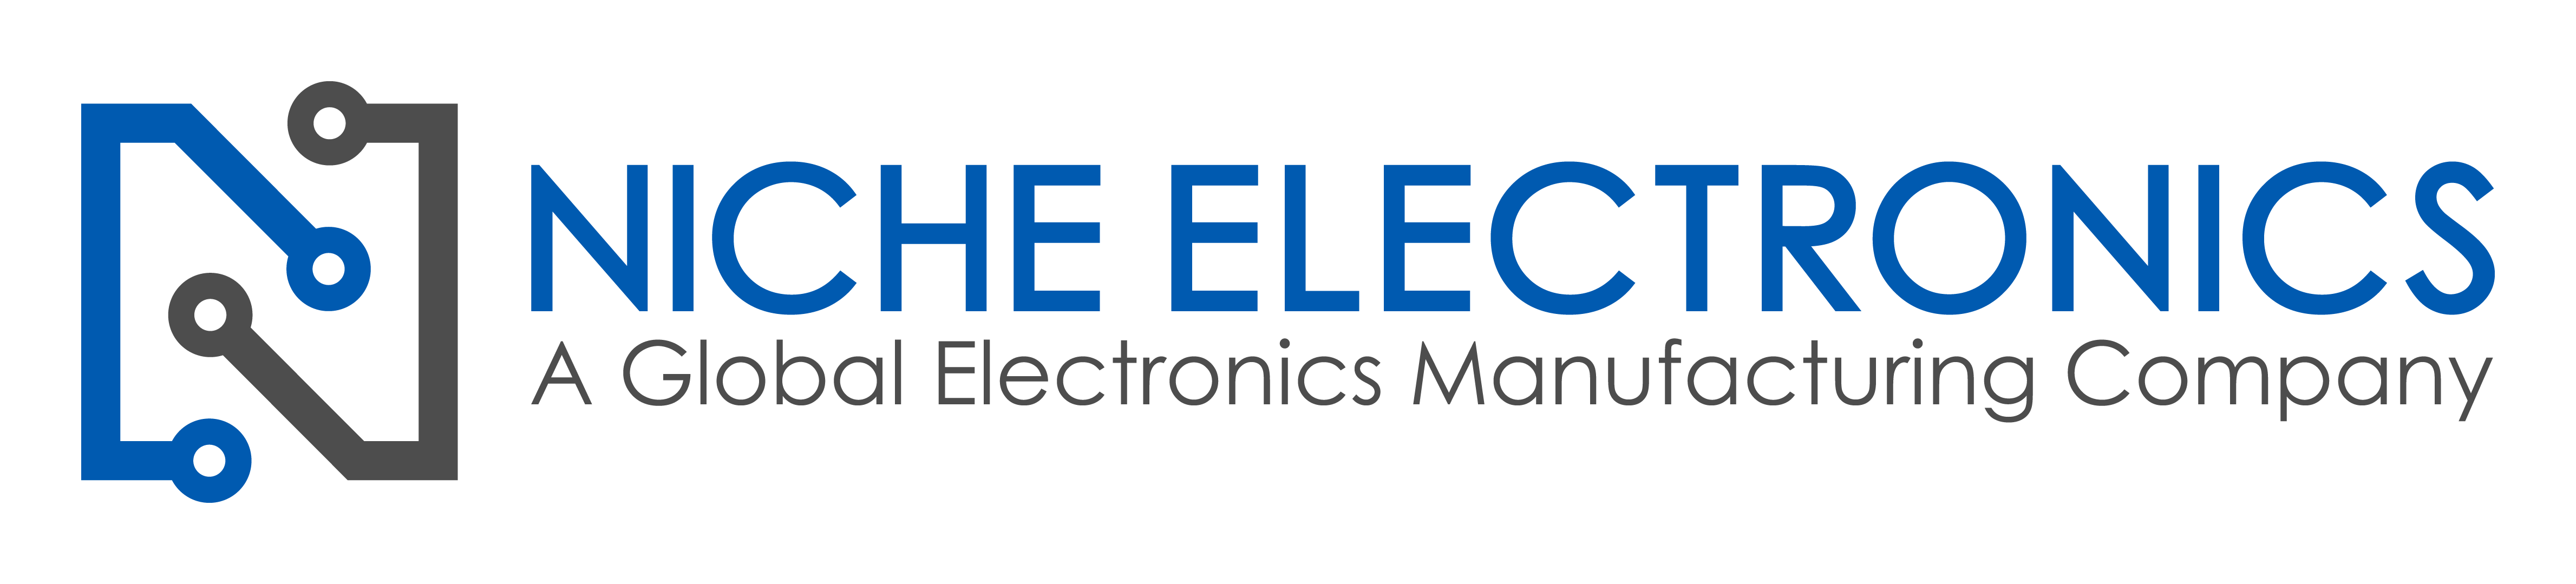 Electronics Company Logo - Home